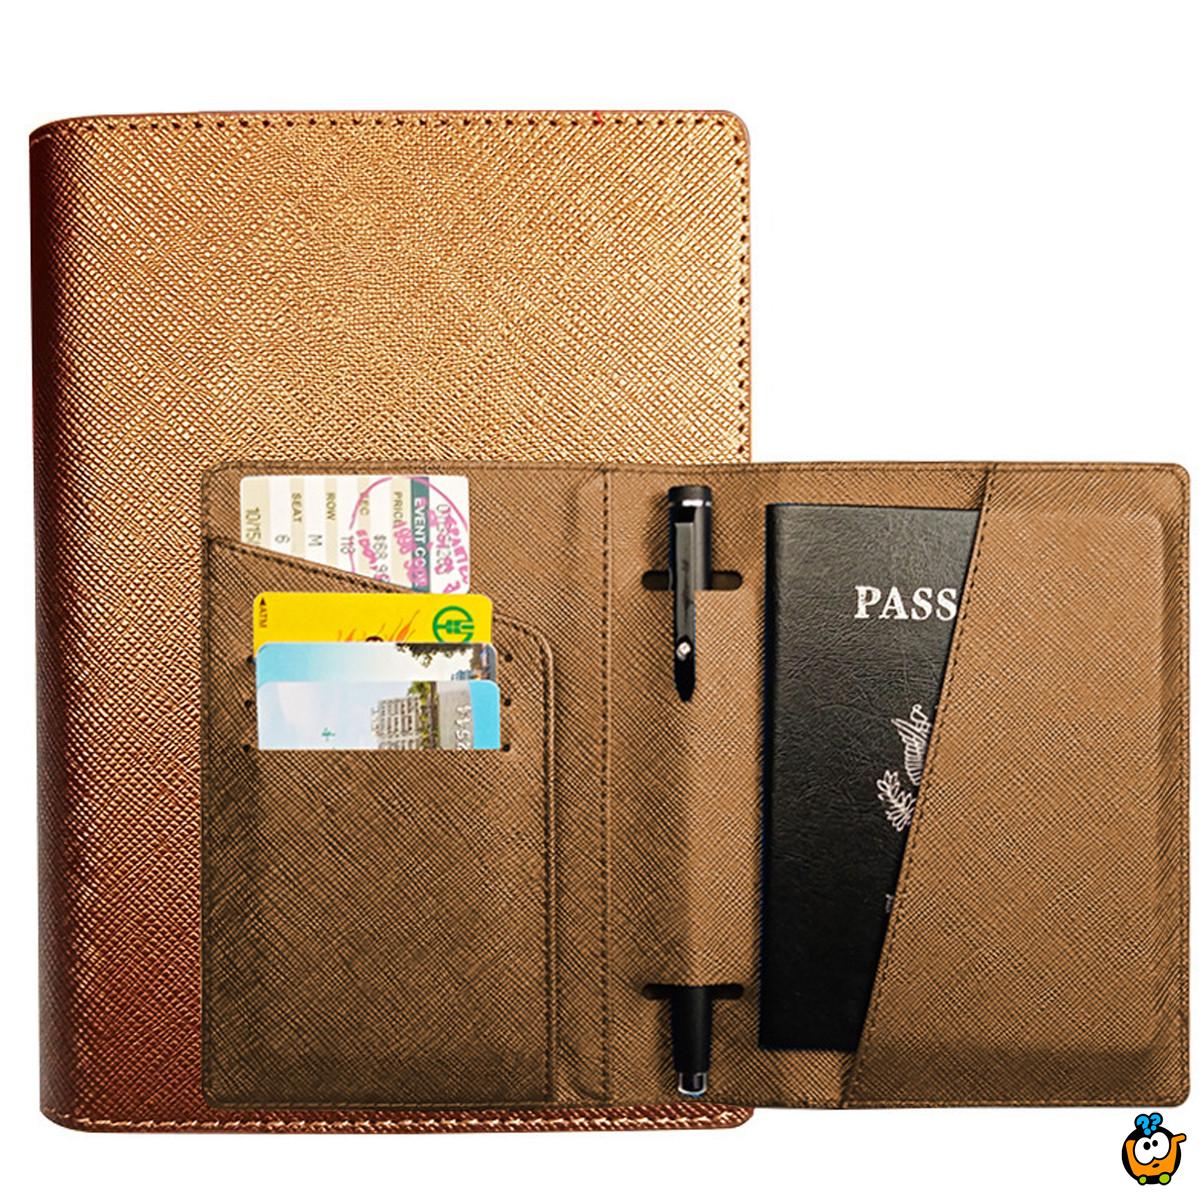 Passport cover - Futrola za pasoš